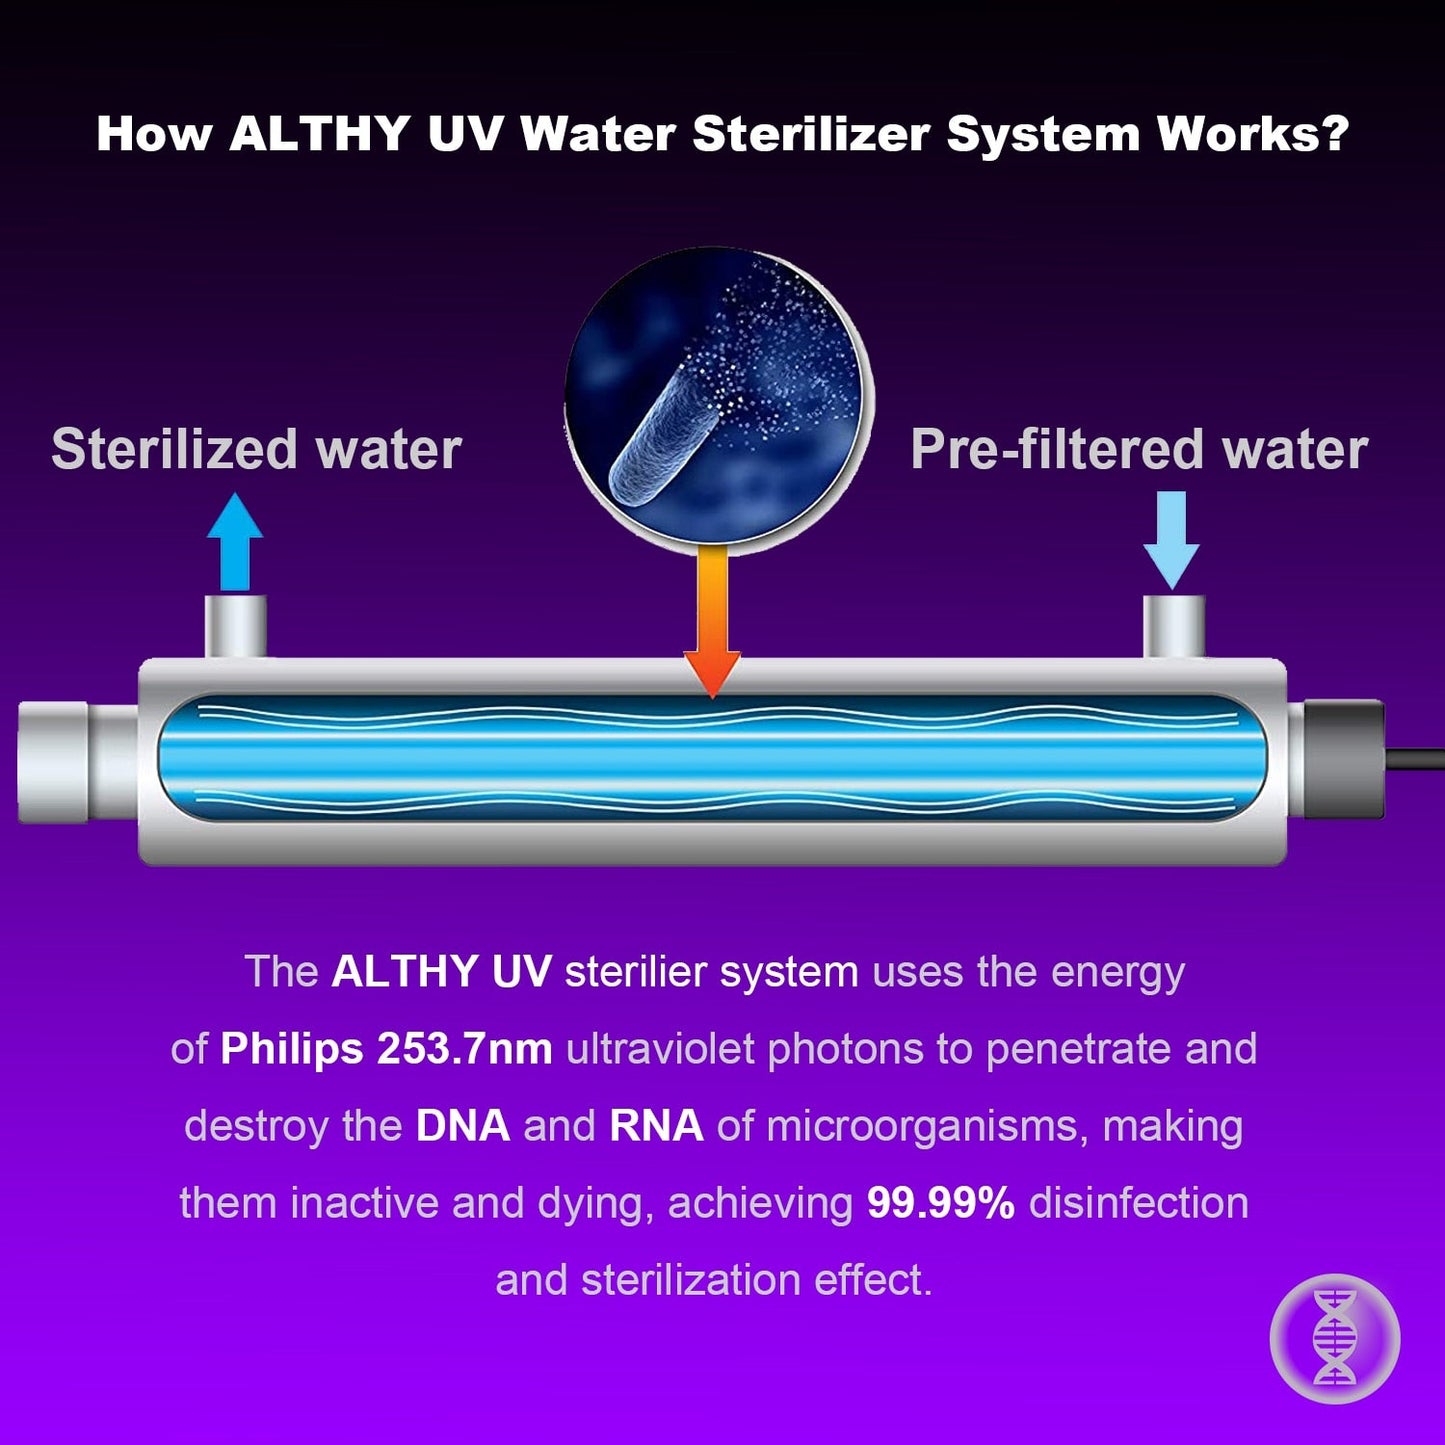 ALTHY система УФ-стерилизатора воды из нержавеющей стали, ультрафиолетовая трубчатая лампа, фильтр для прямой дезинфекции напитков, очиститель/лампа PHILIPS